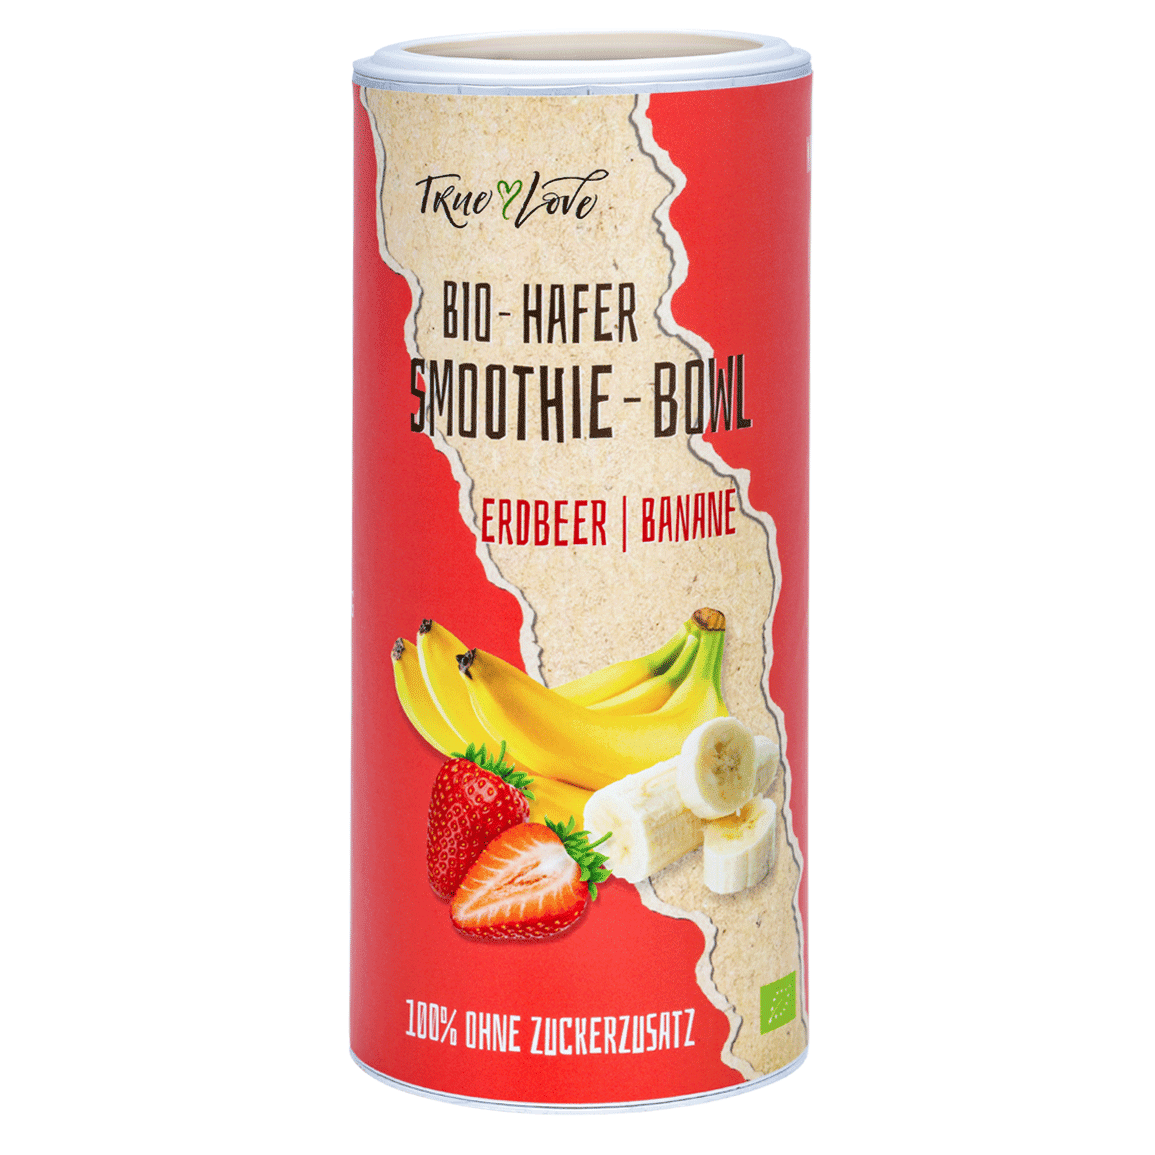 Bio-Hafer Smoothie-Bowl Erdbeer Banane